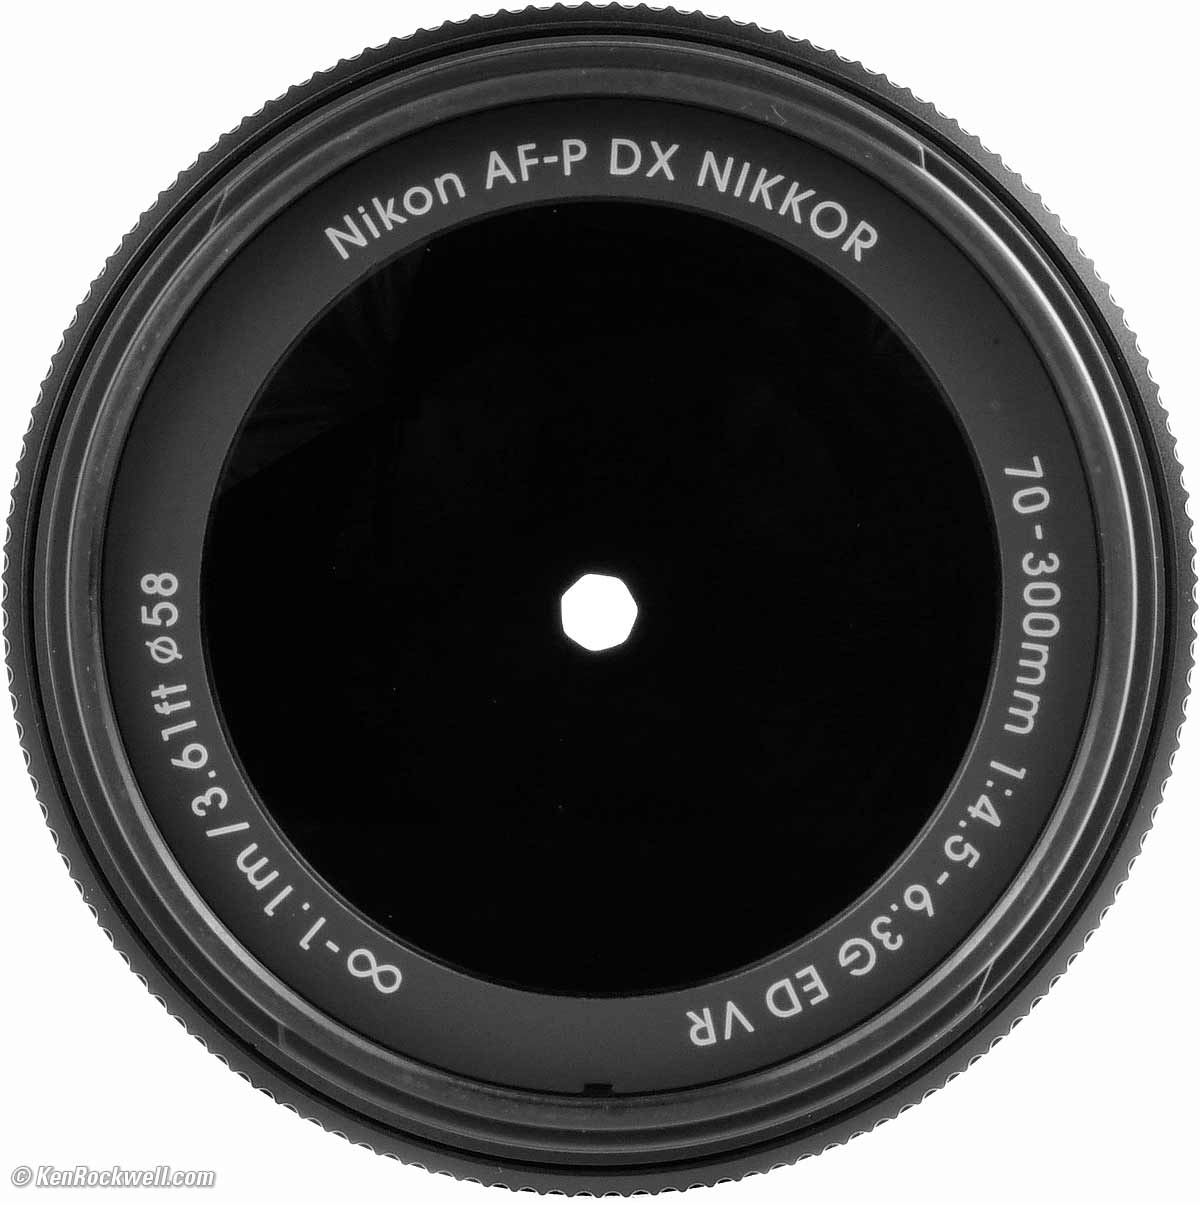 Nikon 70-300mm VR DX AF-P Review